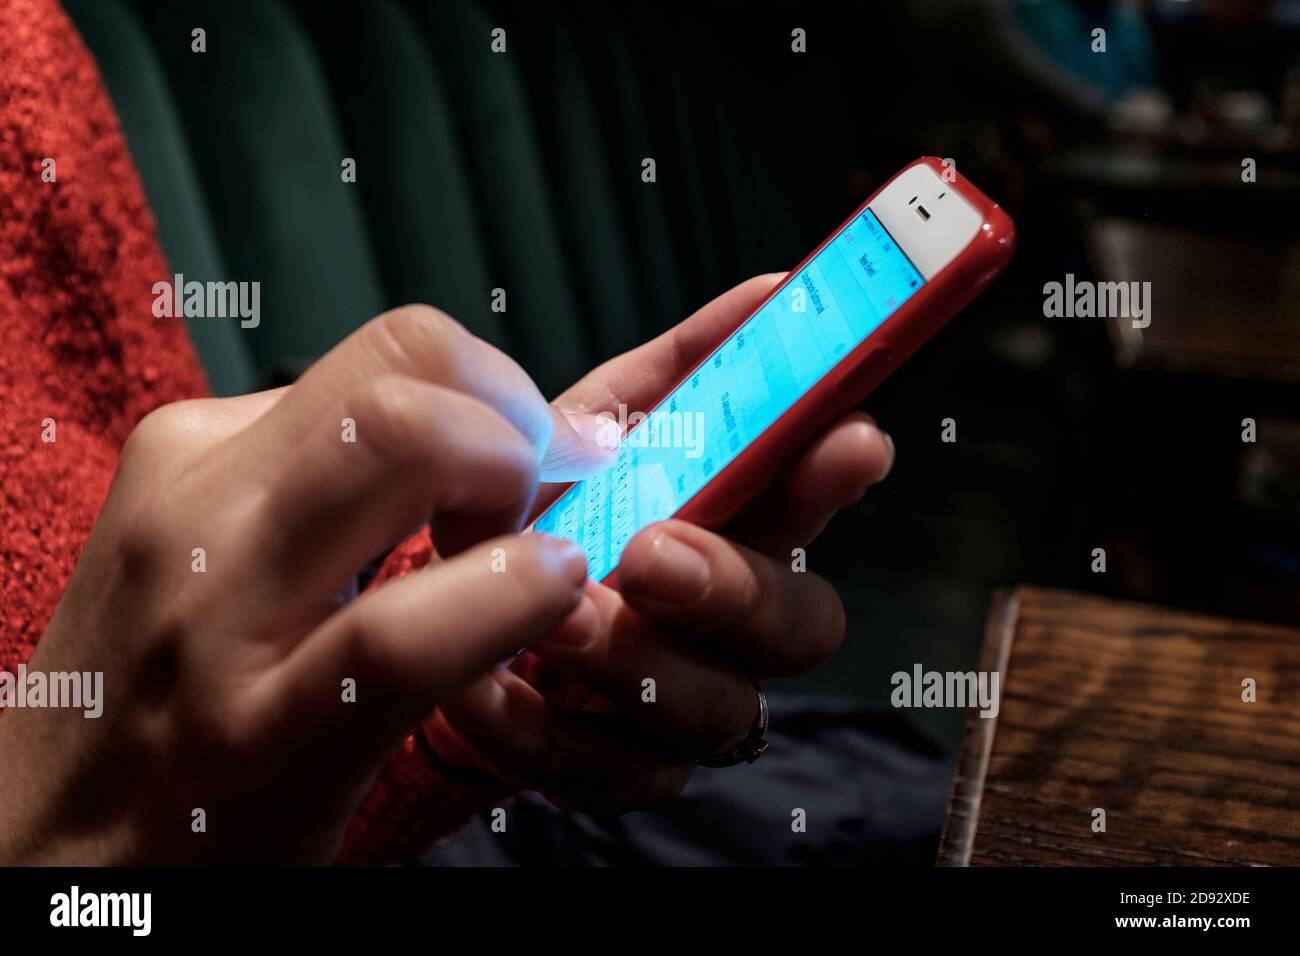 Femme envoyant un message texte sur un smartphone à écran tactile Banque D'Images